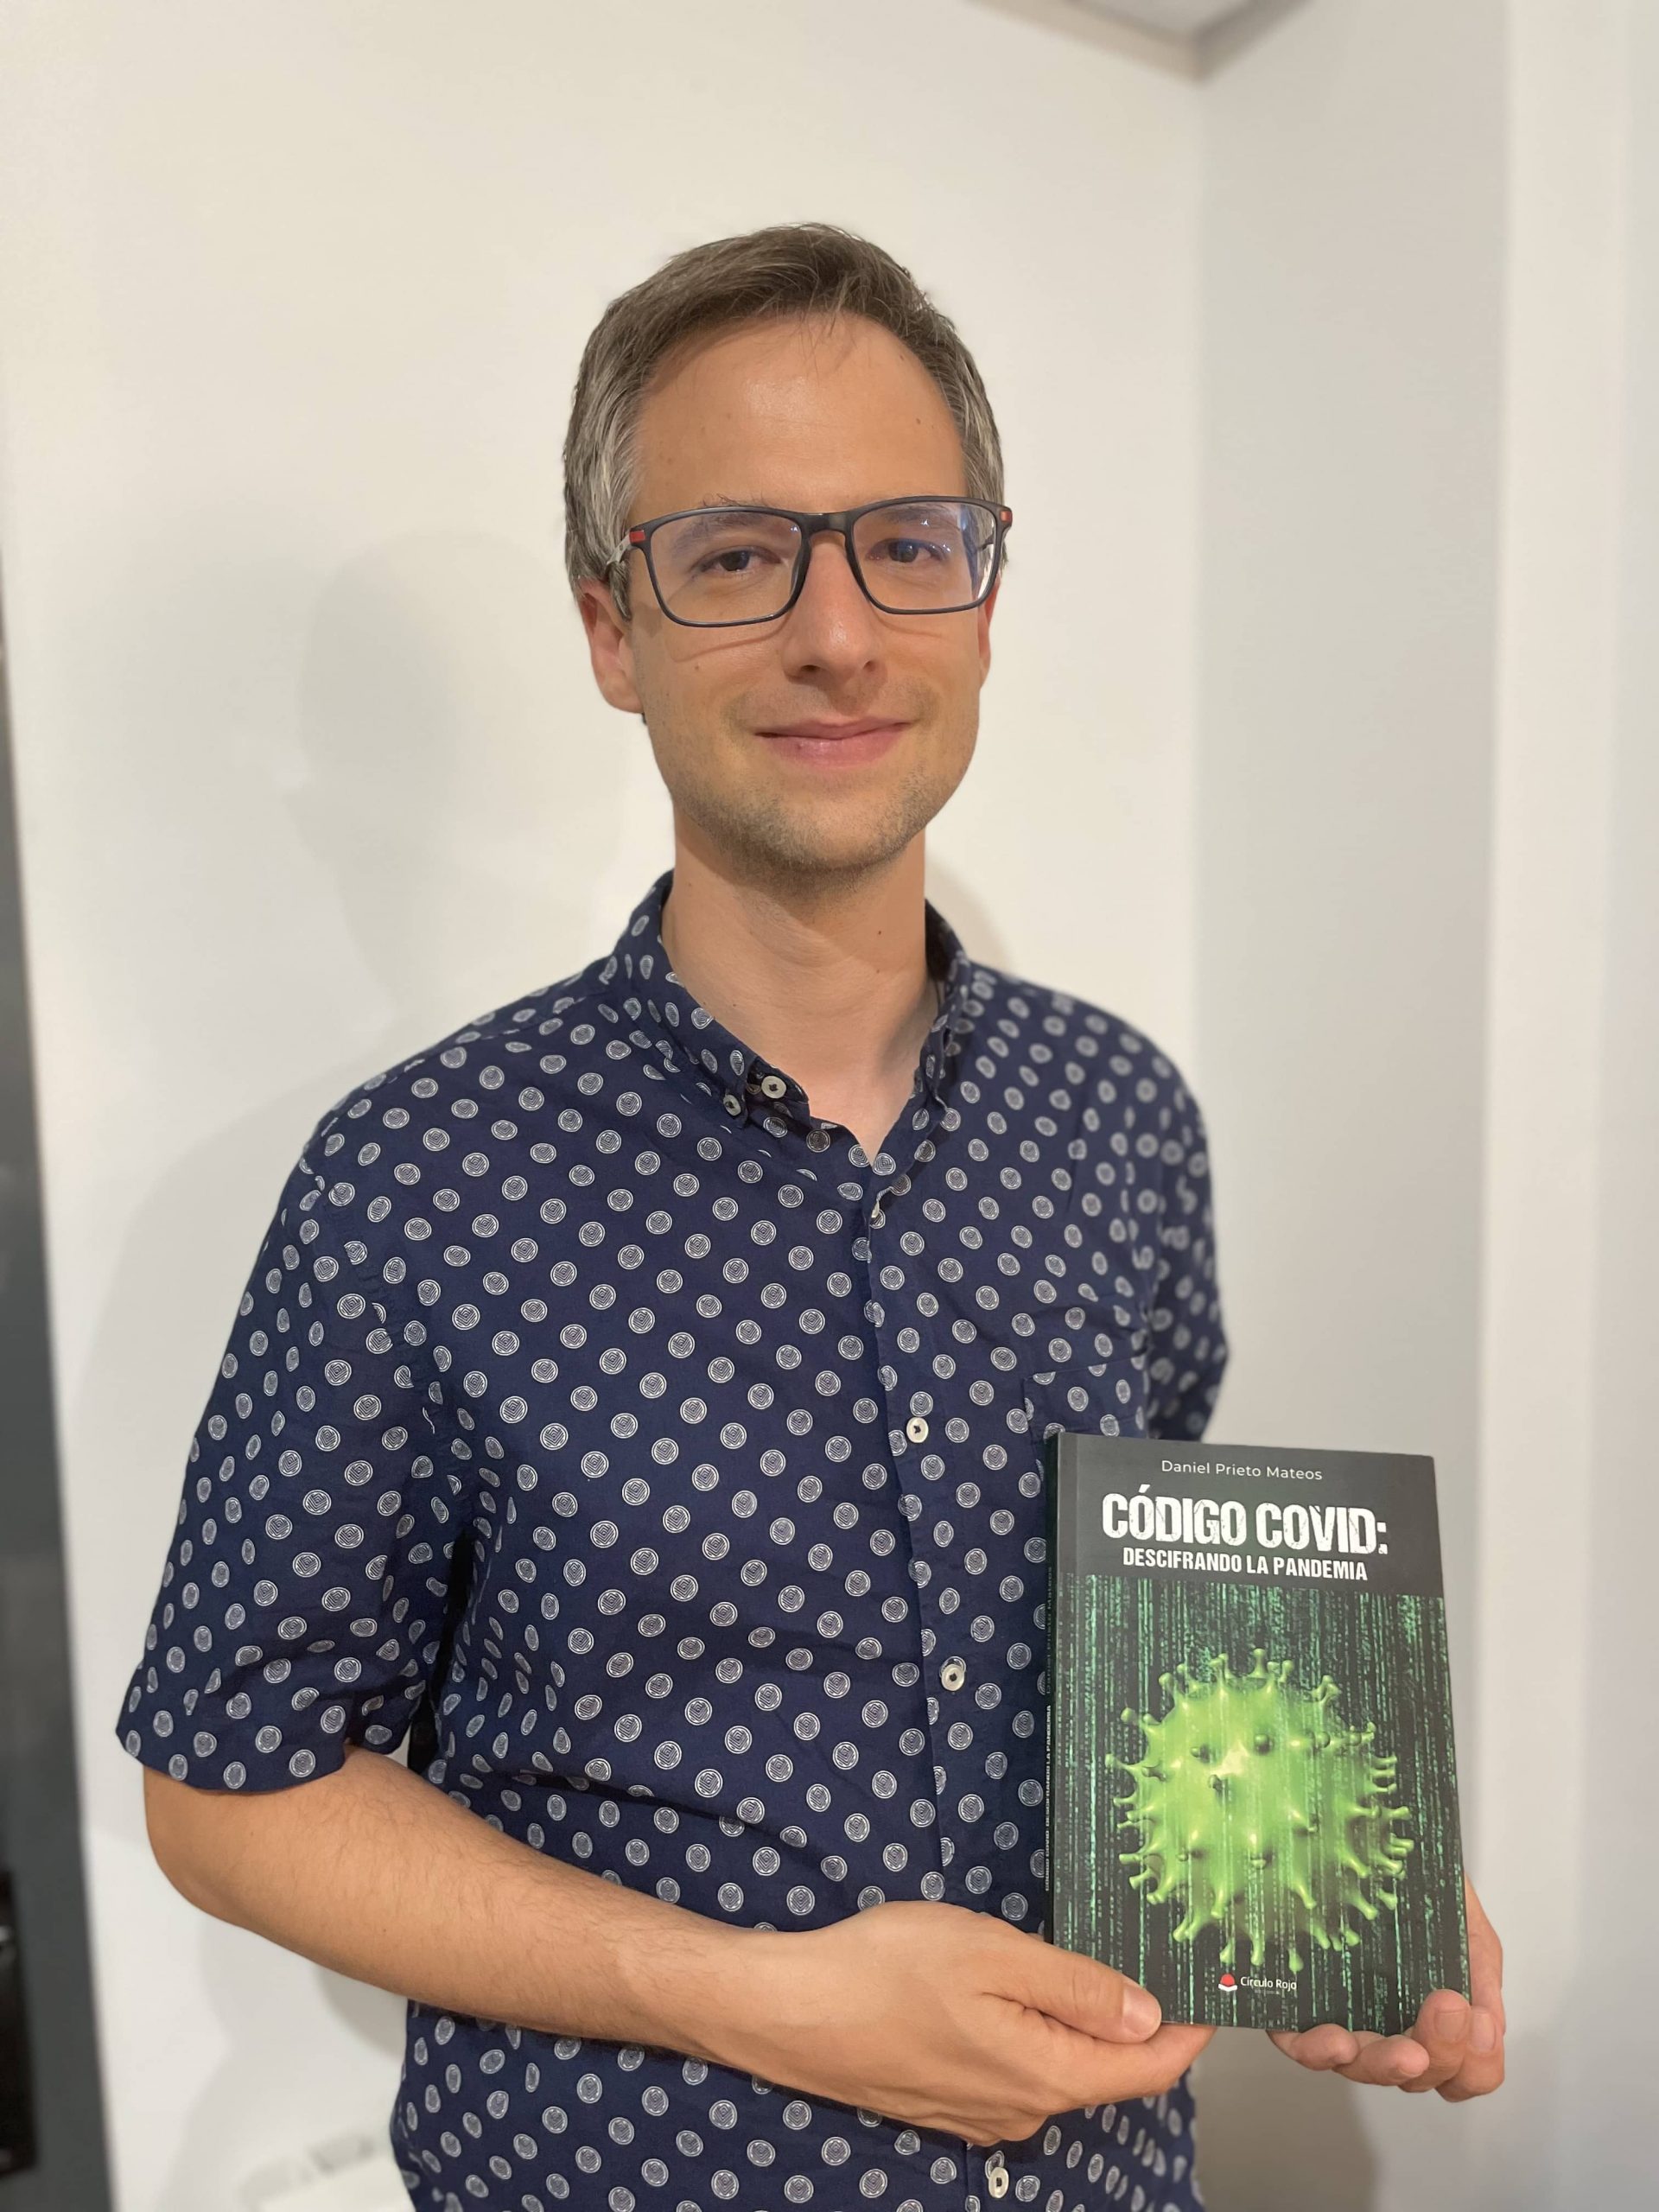 Daniel Prieto, nos presenta su libro “Código COVID: descifrando la pandemia”